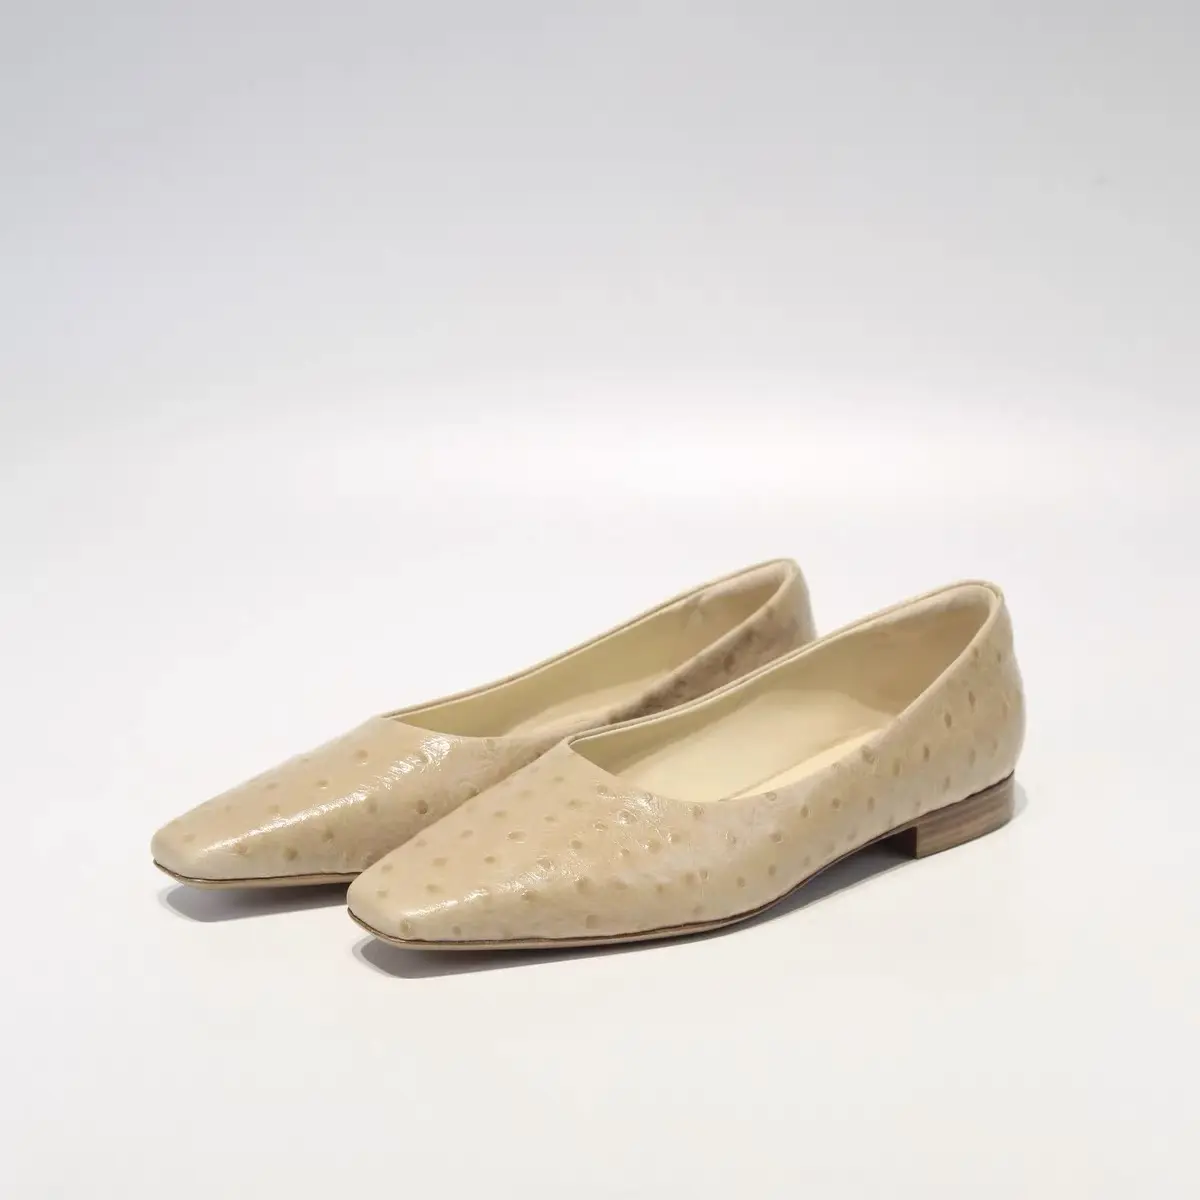 Italie importé motif d'autruche nouvelles chaussures Muller tête carrée bouche peu profonde chaussures plates chaussures simples conception de niche féminine